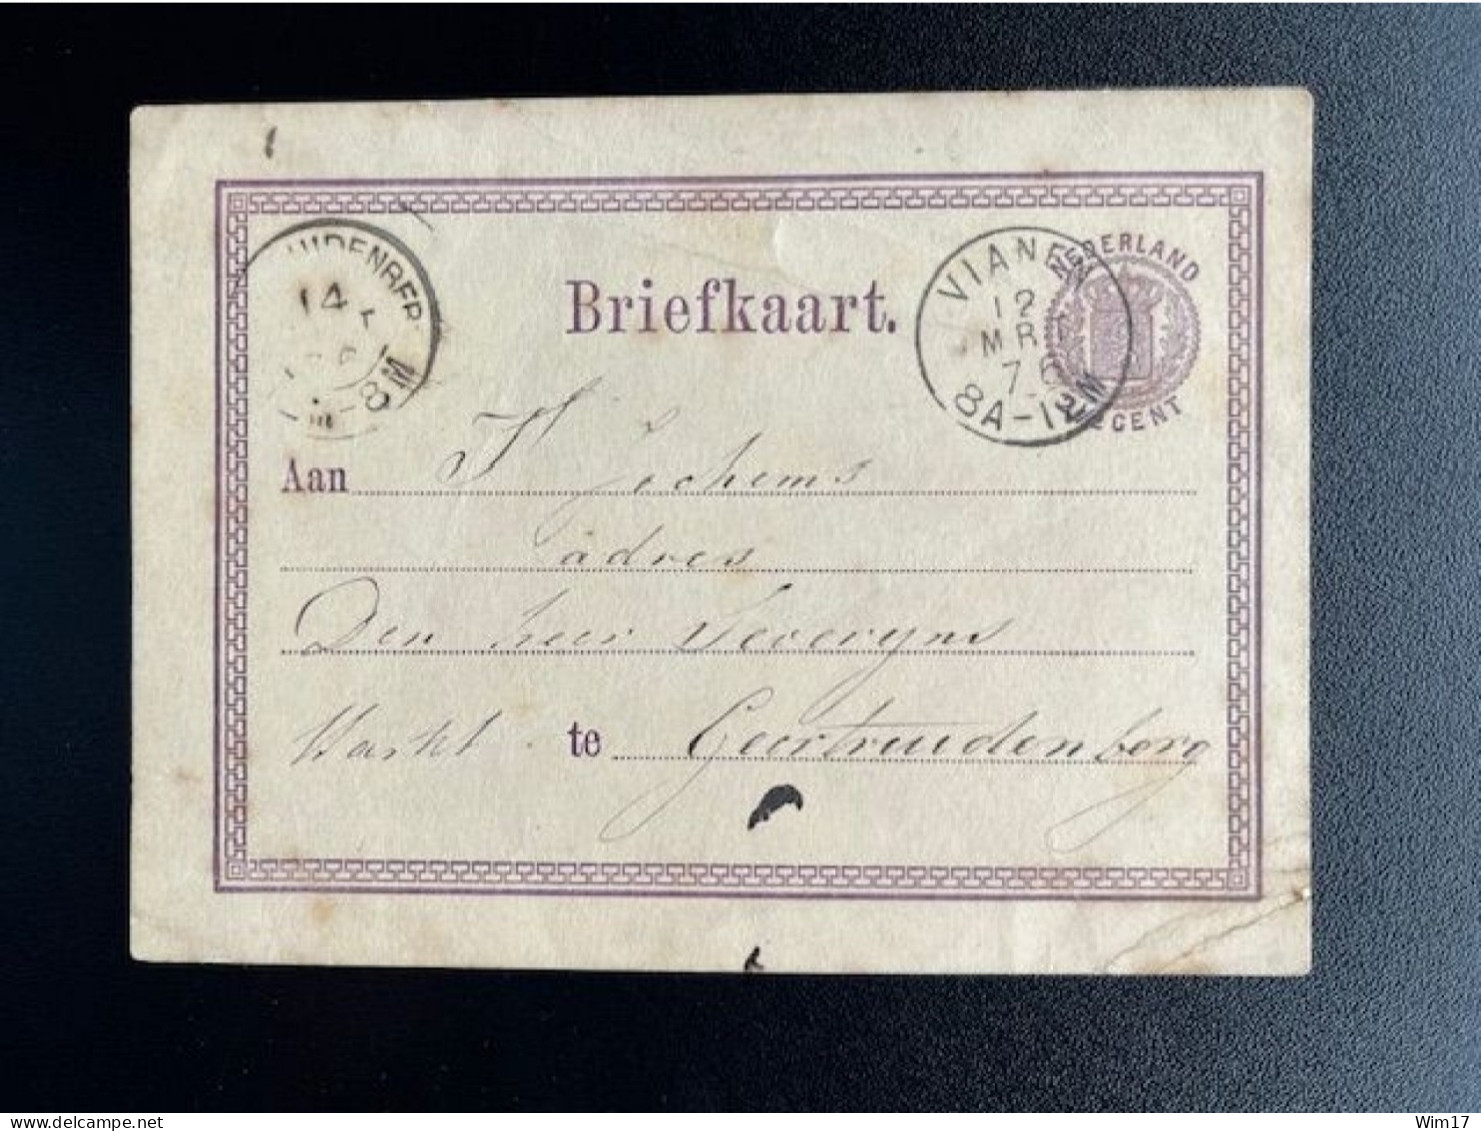 NETHERLANDS 1876 POSTCARD VIANEN TO GEERTRUIDENBERG 12-03-1876 NEDERLAND BRIEFKAART - Postal Stationery